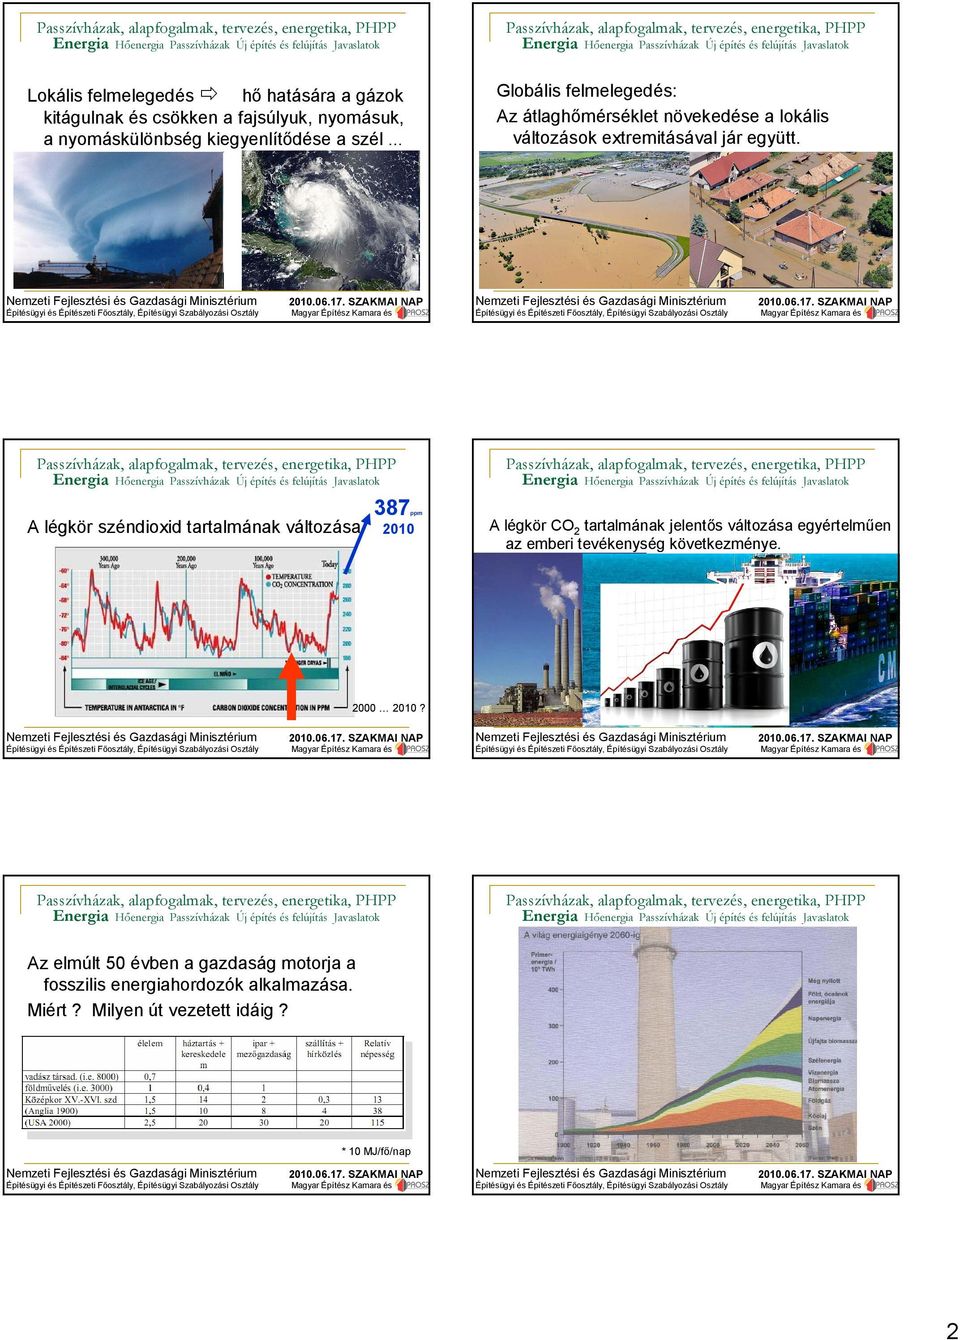 387ppm 2010 A légkör CO 2 tartalmának jelentős változása egyértelműen az emberi tevékenység következménye Fosszilis energiahordozók